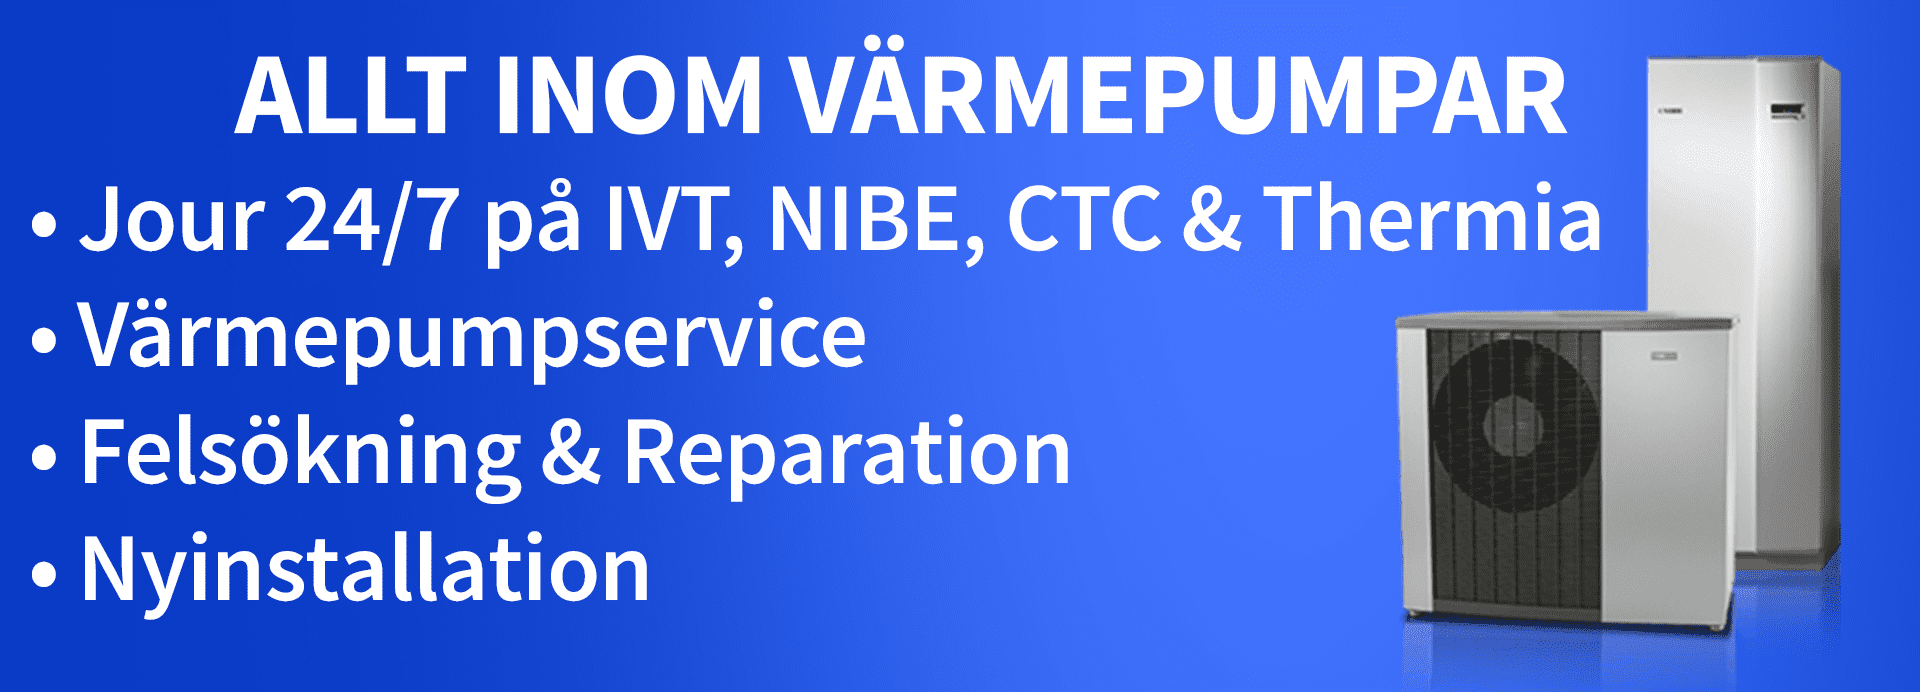 Värmepumpar Stockholm, värmepumpservice, felsökning, reparation felsökning IVT, NIBE, Thermia, CTC